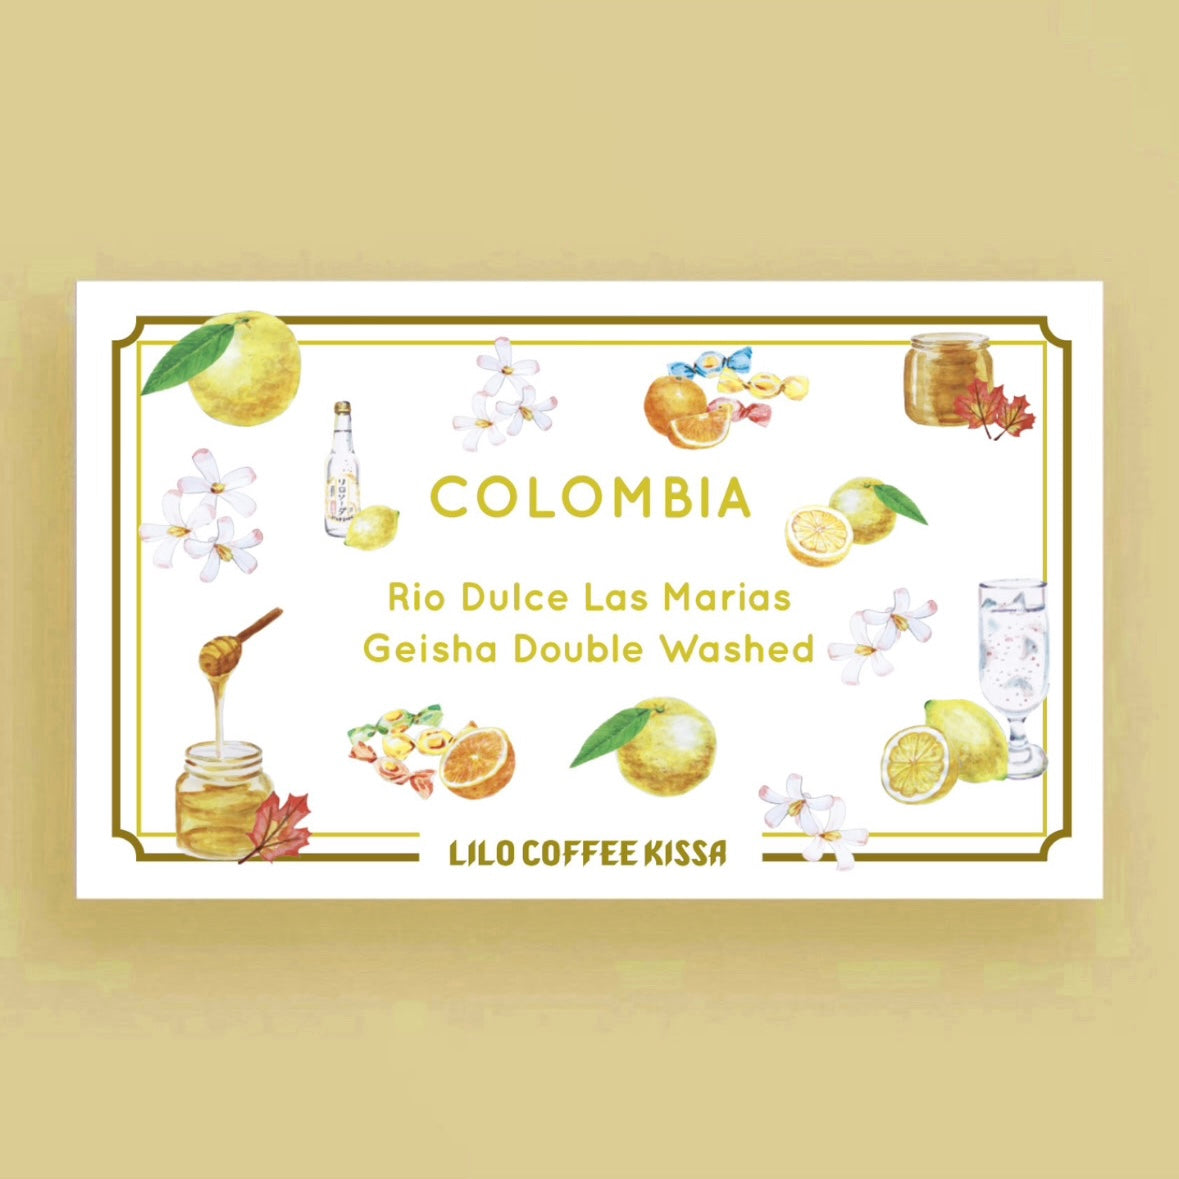 【Kissa】COLOMBIA Rio Dulce Geisha Double Washed